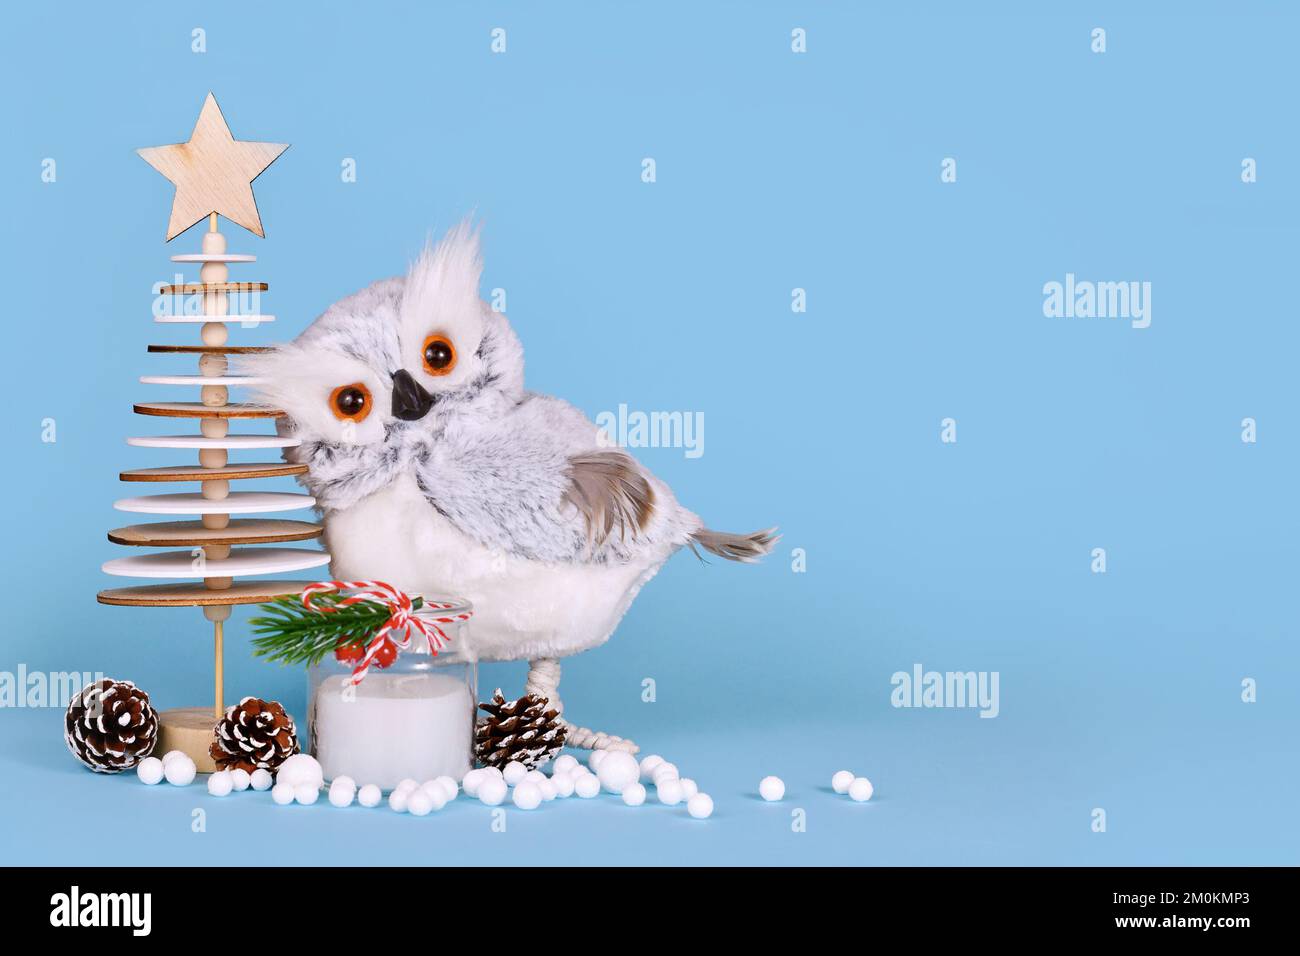 Décoration de Noël de saison avec hibou enneigé, arbre en bois, bougie, cônes de pin et boules de neige sur fond bleu avec espace de copie Banque D'Images